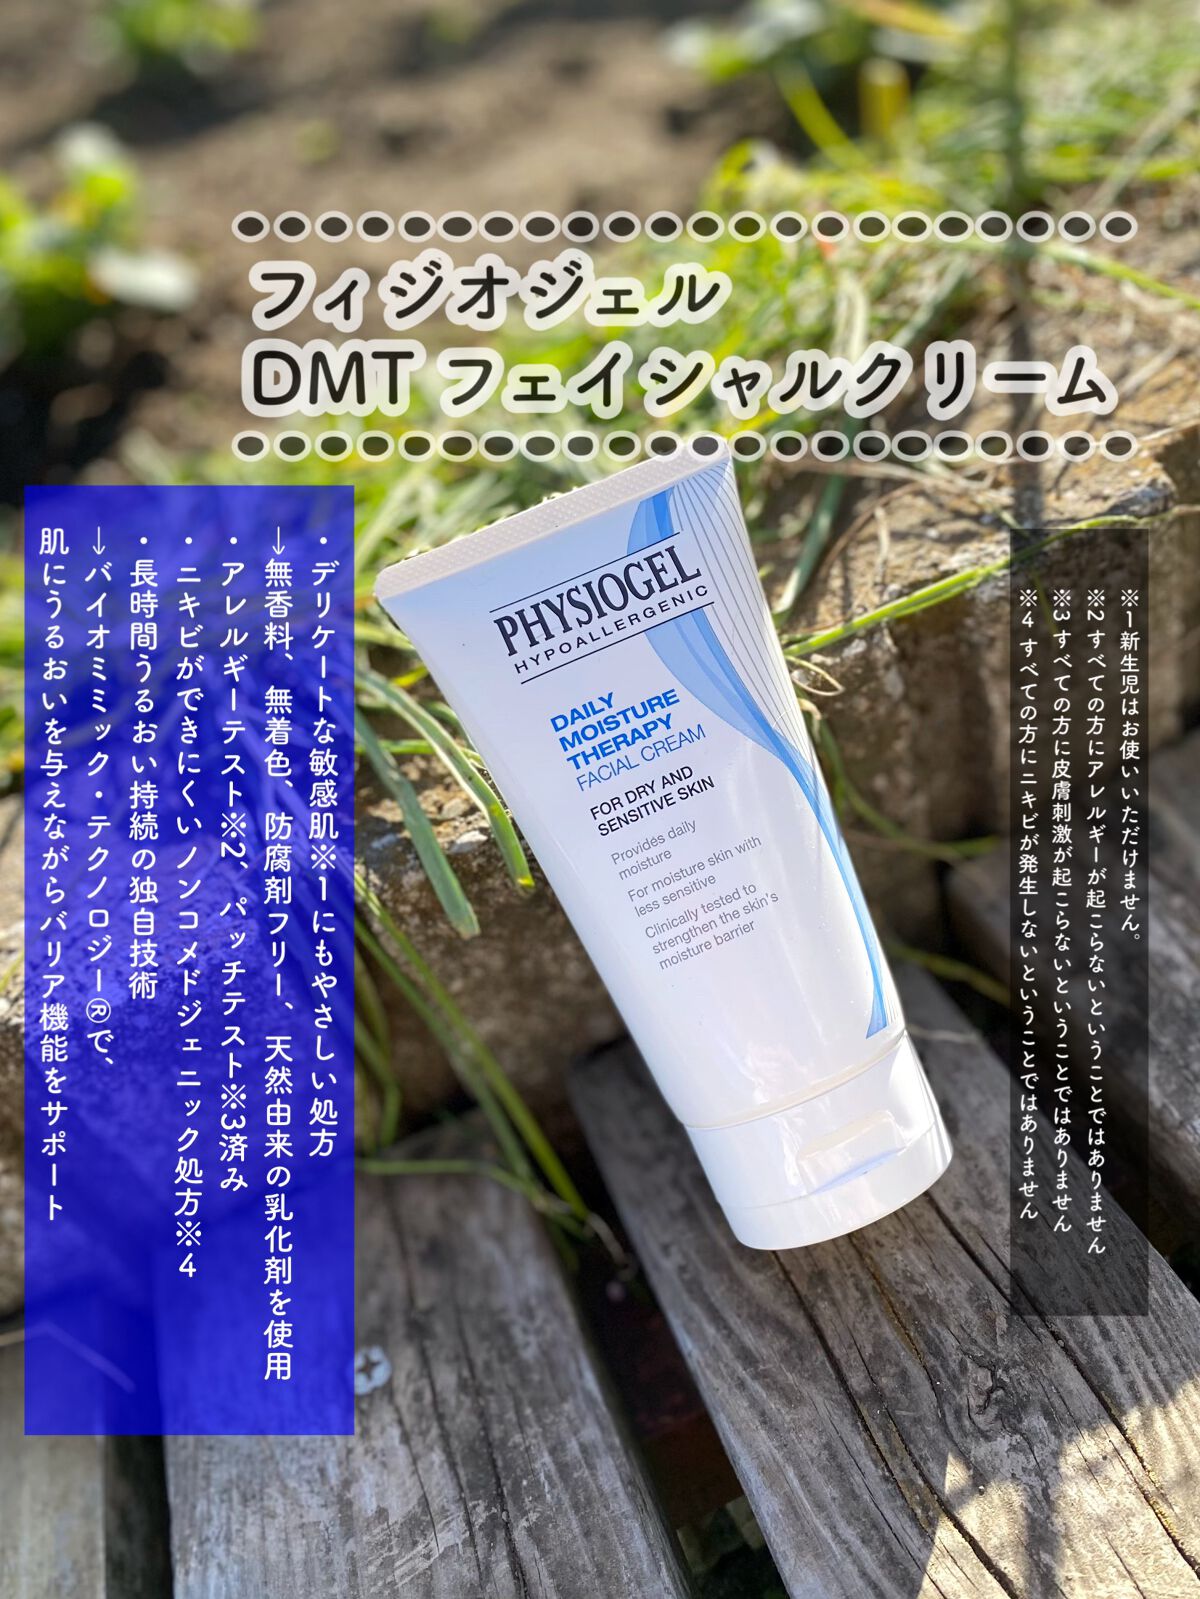 専門店では PHYSIOGEL DMT フェイシャルクリーム うるおい しっとり デリケート肌 低刺激 植物性 乾燥 クリーム 150mL 美肌  スクワラン 日本公式 美容 フェイスクリーム フィジオジェル 保湿 肌荒れ フェイスクリーム